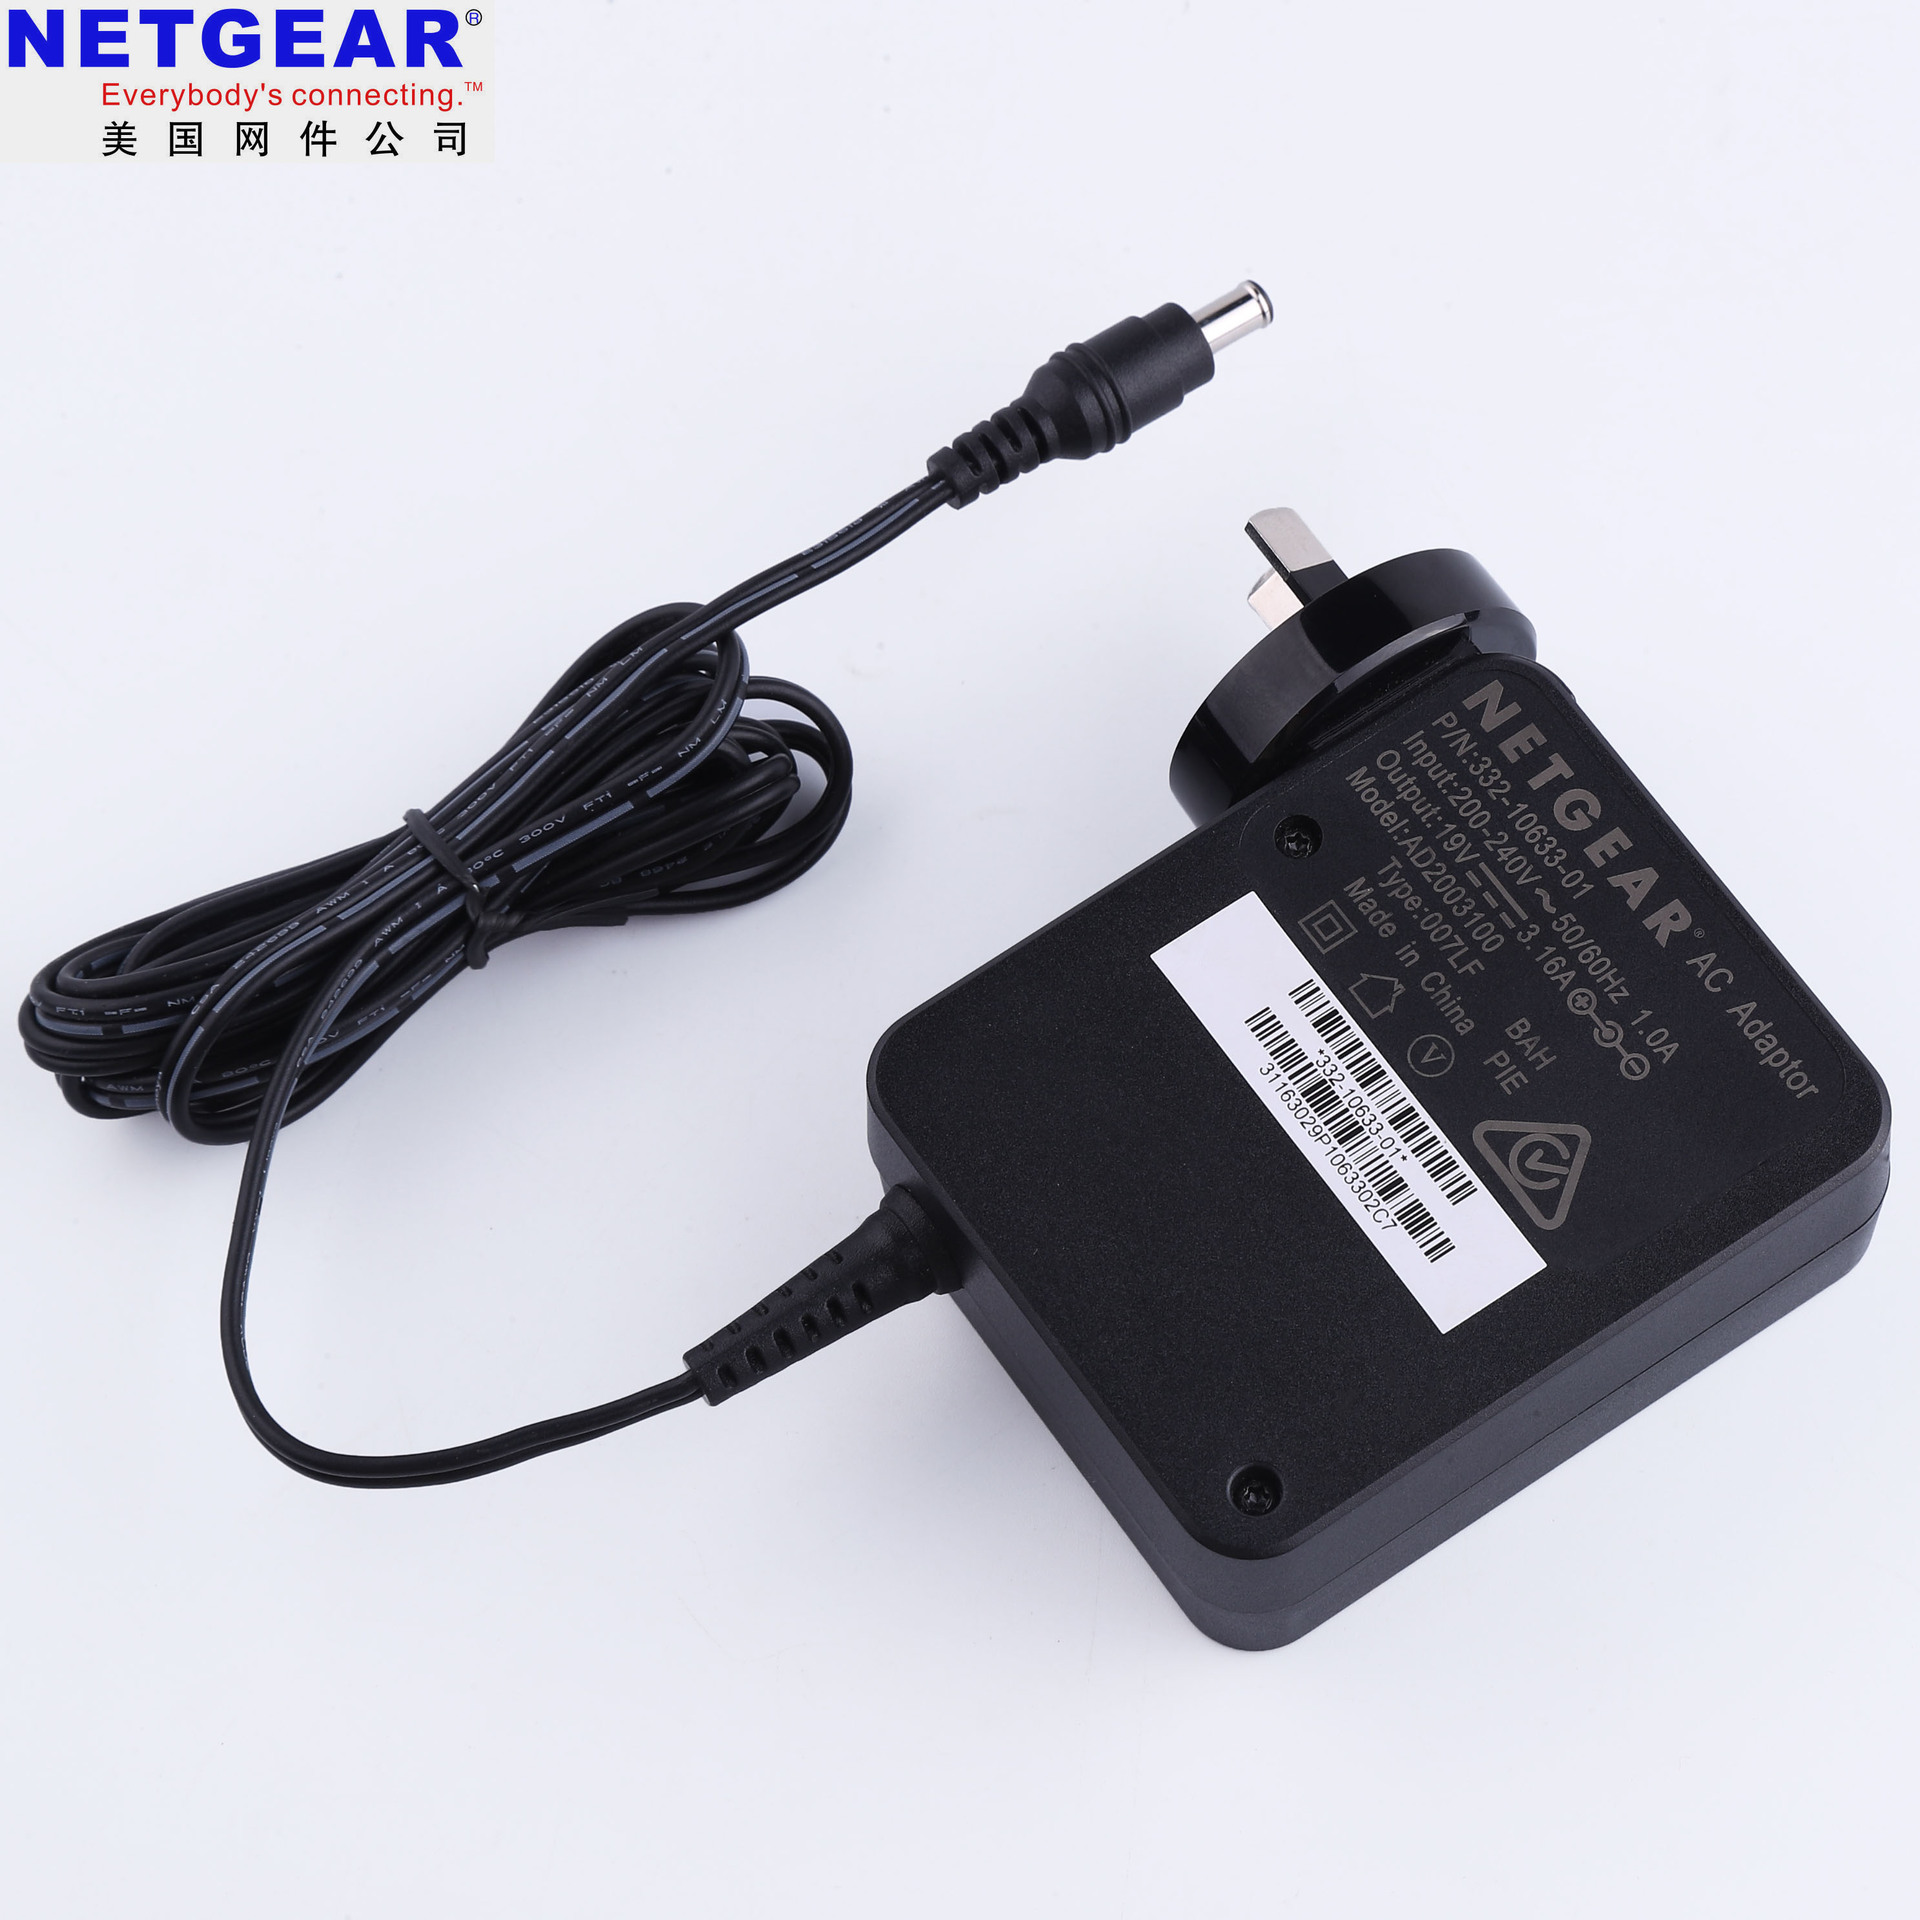 网件Netgear R8500/R9000路由器电源适配器 澳规19V 3.16A充电器